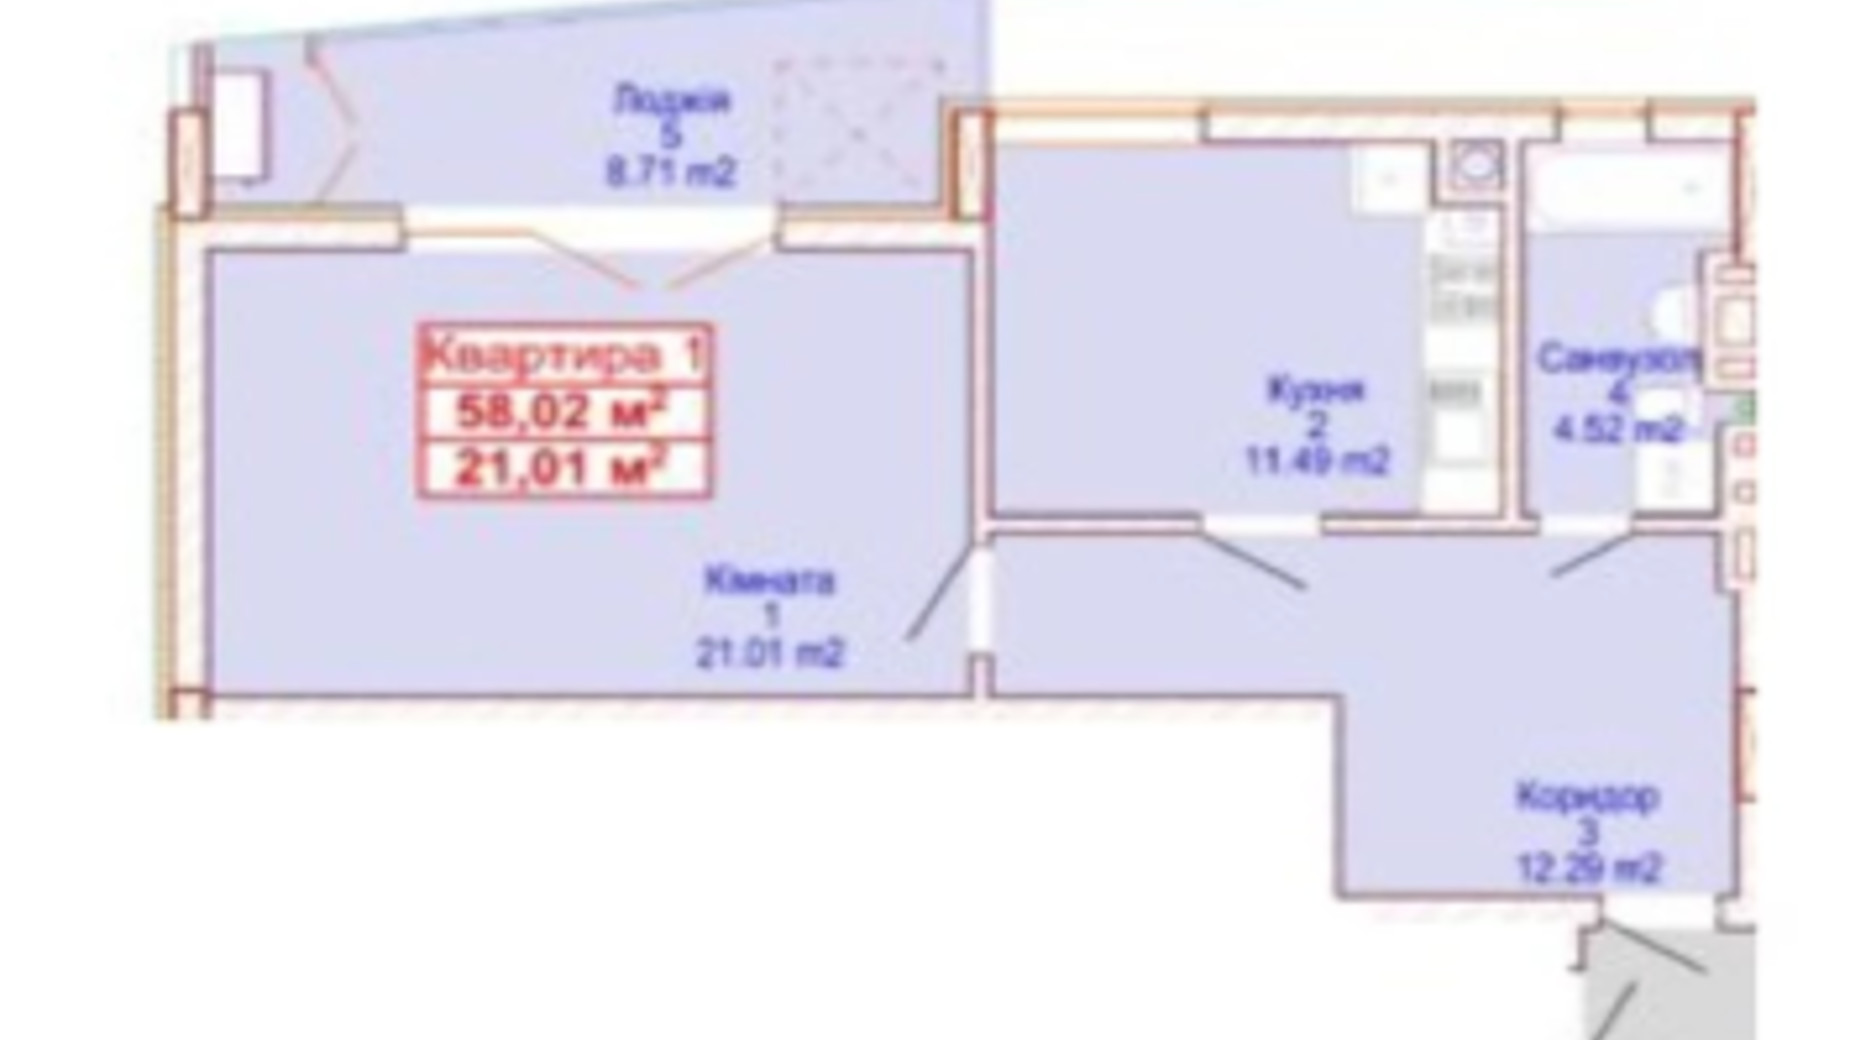 Планировка 1-комнатной квартиры в ЖК Адамант 58.02 м², фото 464594